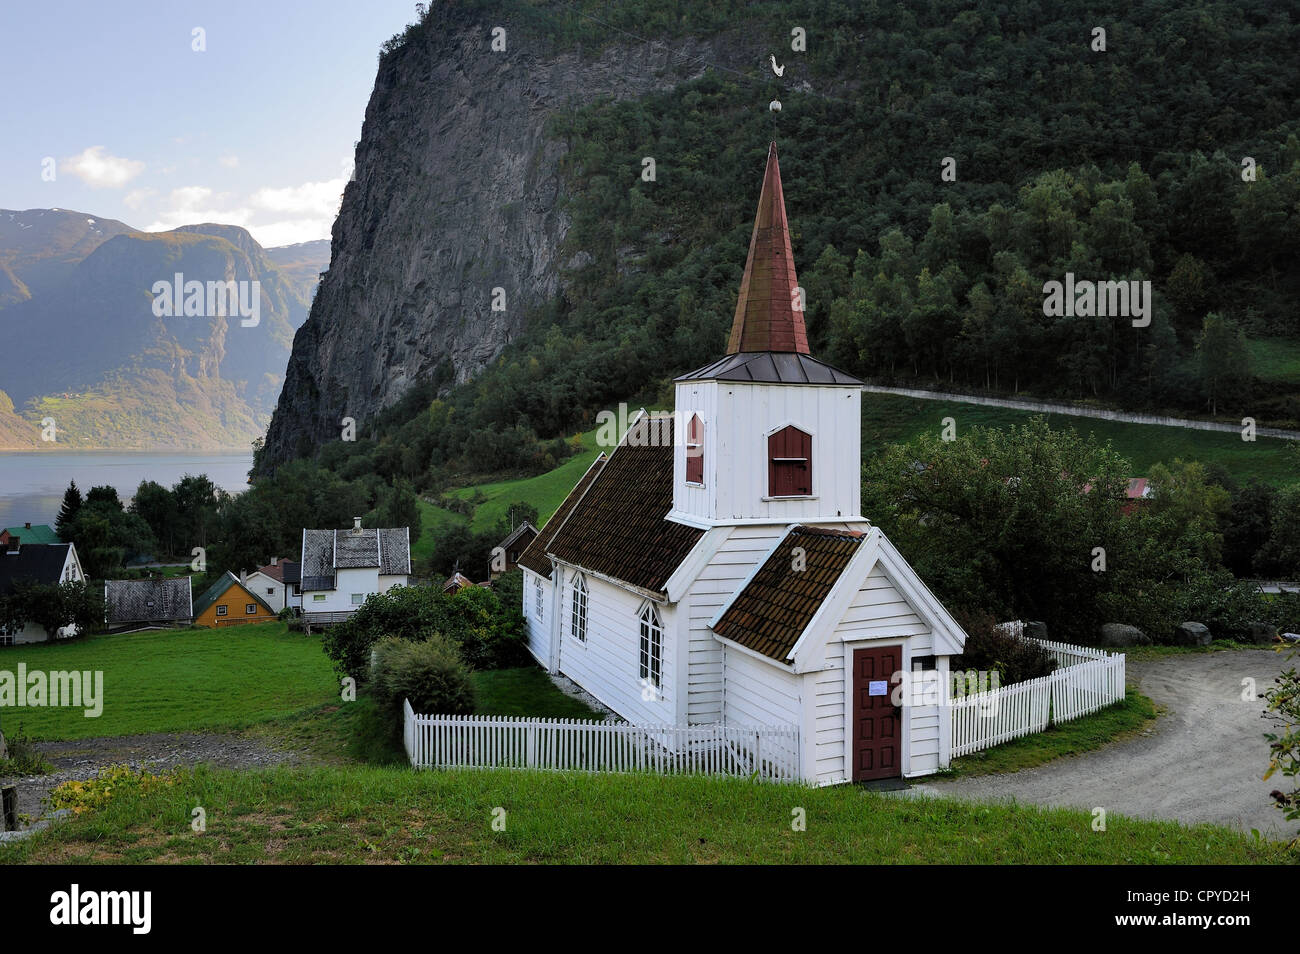 Norvegia Sogn og Fjordane County Laerdal Undredal nel fiordo di Aurland doga in legno chiesa chiamata stavkirker o stavkirke costruita in Foto Stock